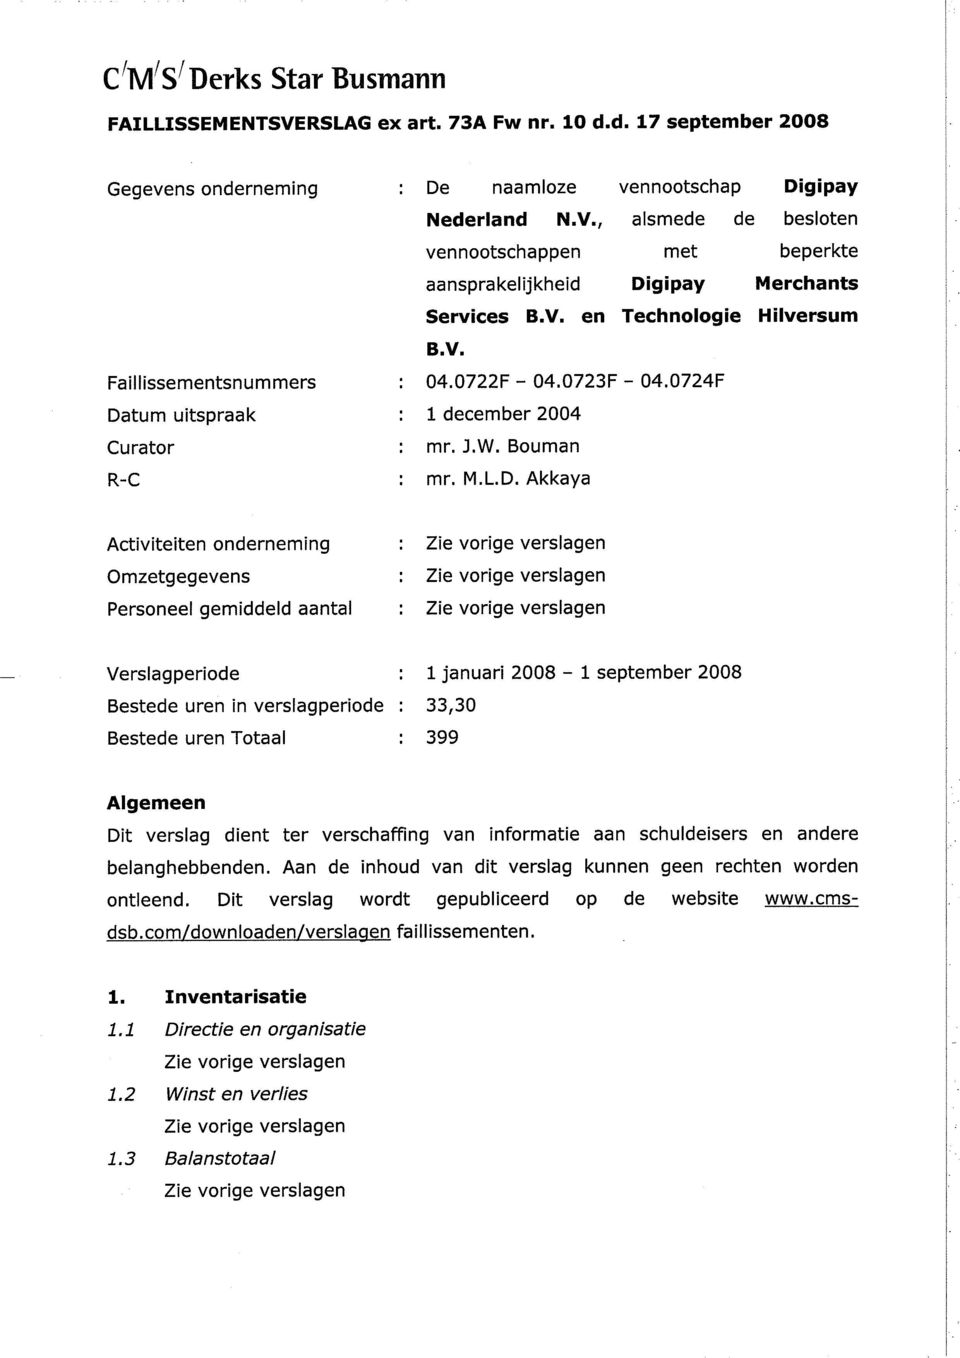 , alsmede de besloten vennootschappen met beperkte aansprakelijkheid Digipay Merchants Services B.V. en Technologie Hilversum B.V. 04.0722F - 04.0723F - 04.0724F 1 december 2OO4 mr. J.W. Bouman mr. M.L.